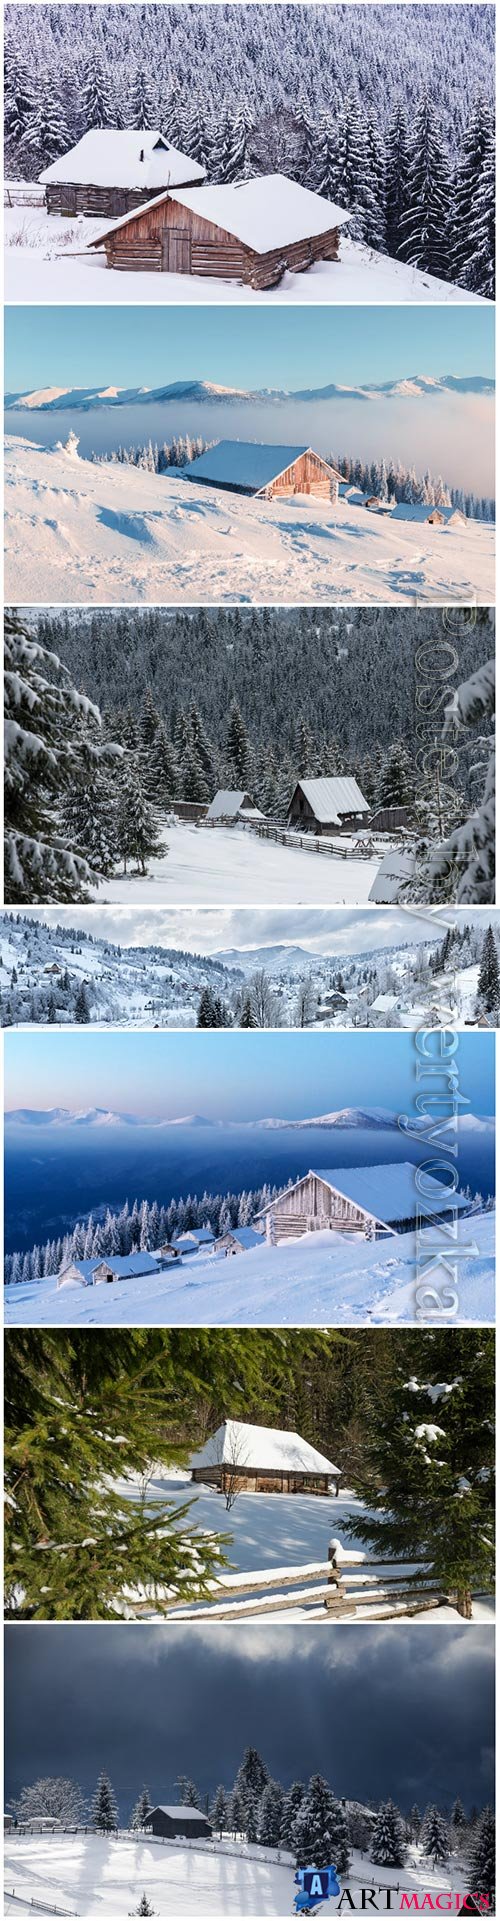 Winter landscape beautiful stock photo